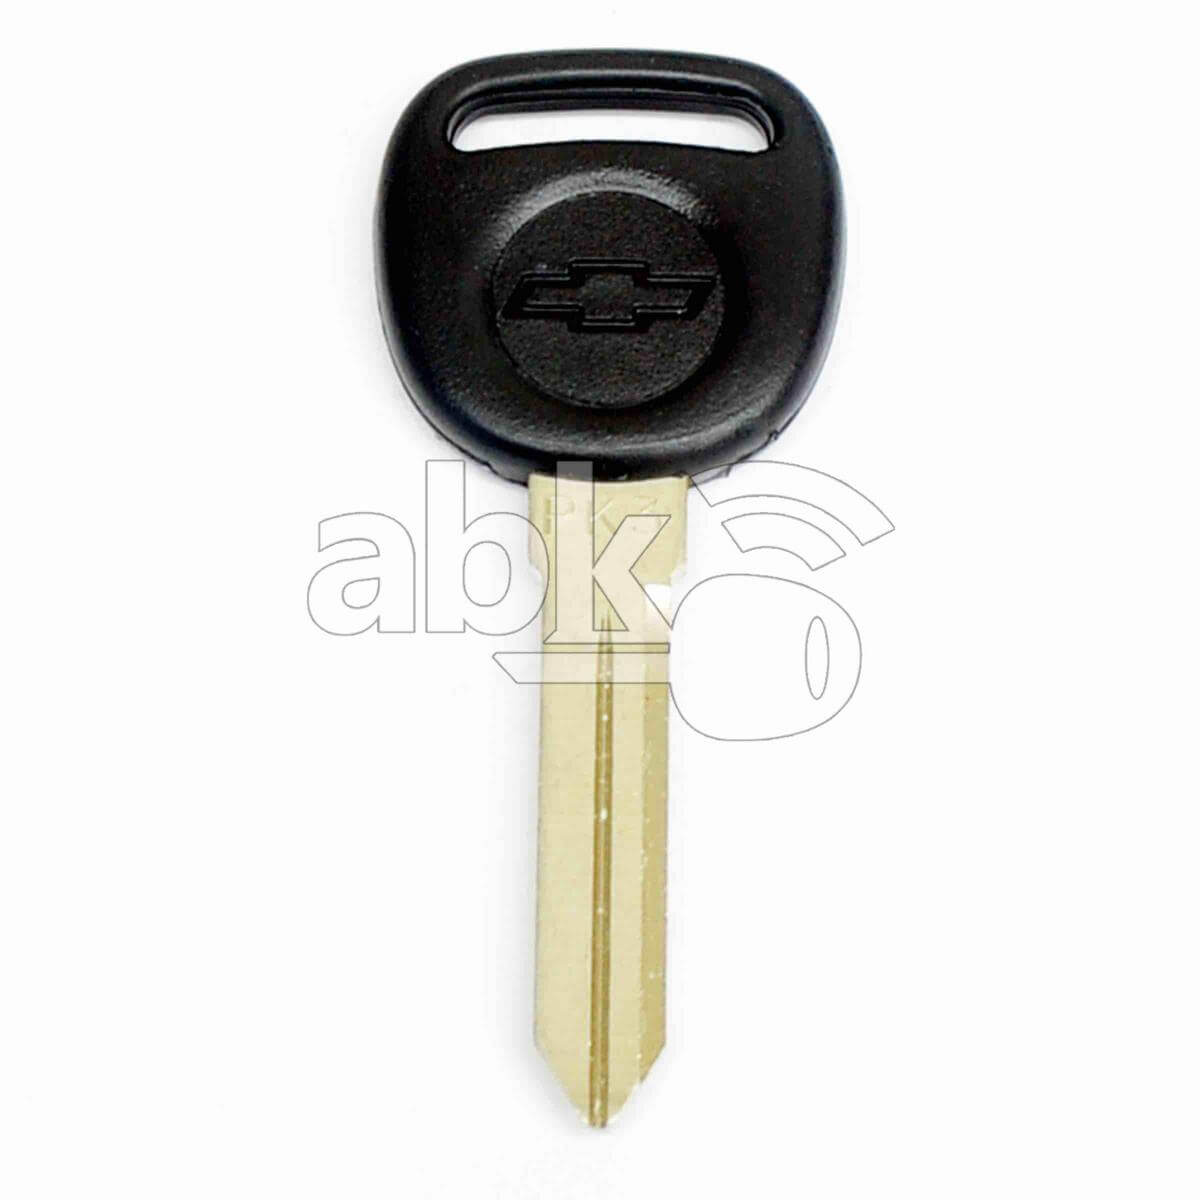 Genuine Chevrolet Uplander Transponder Key 13 MEGAMOS GM40 692955 - ABK-594 - ABKEYS.COM